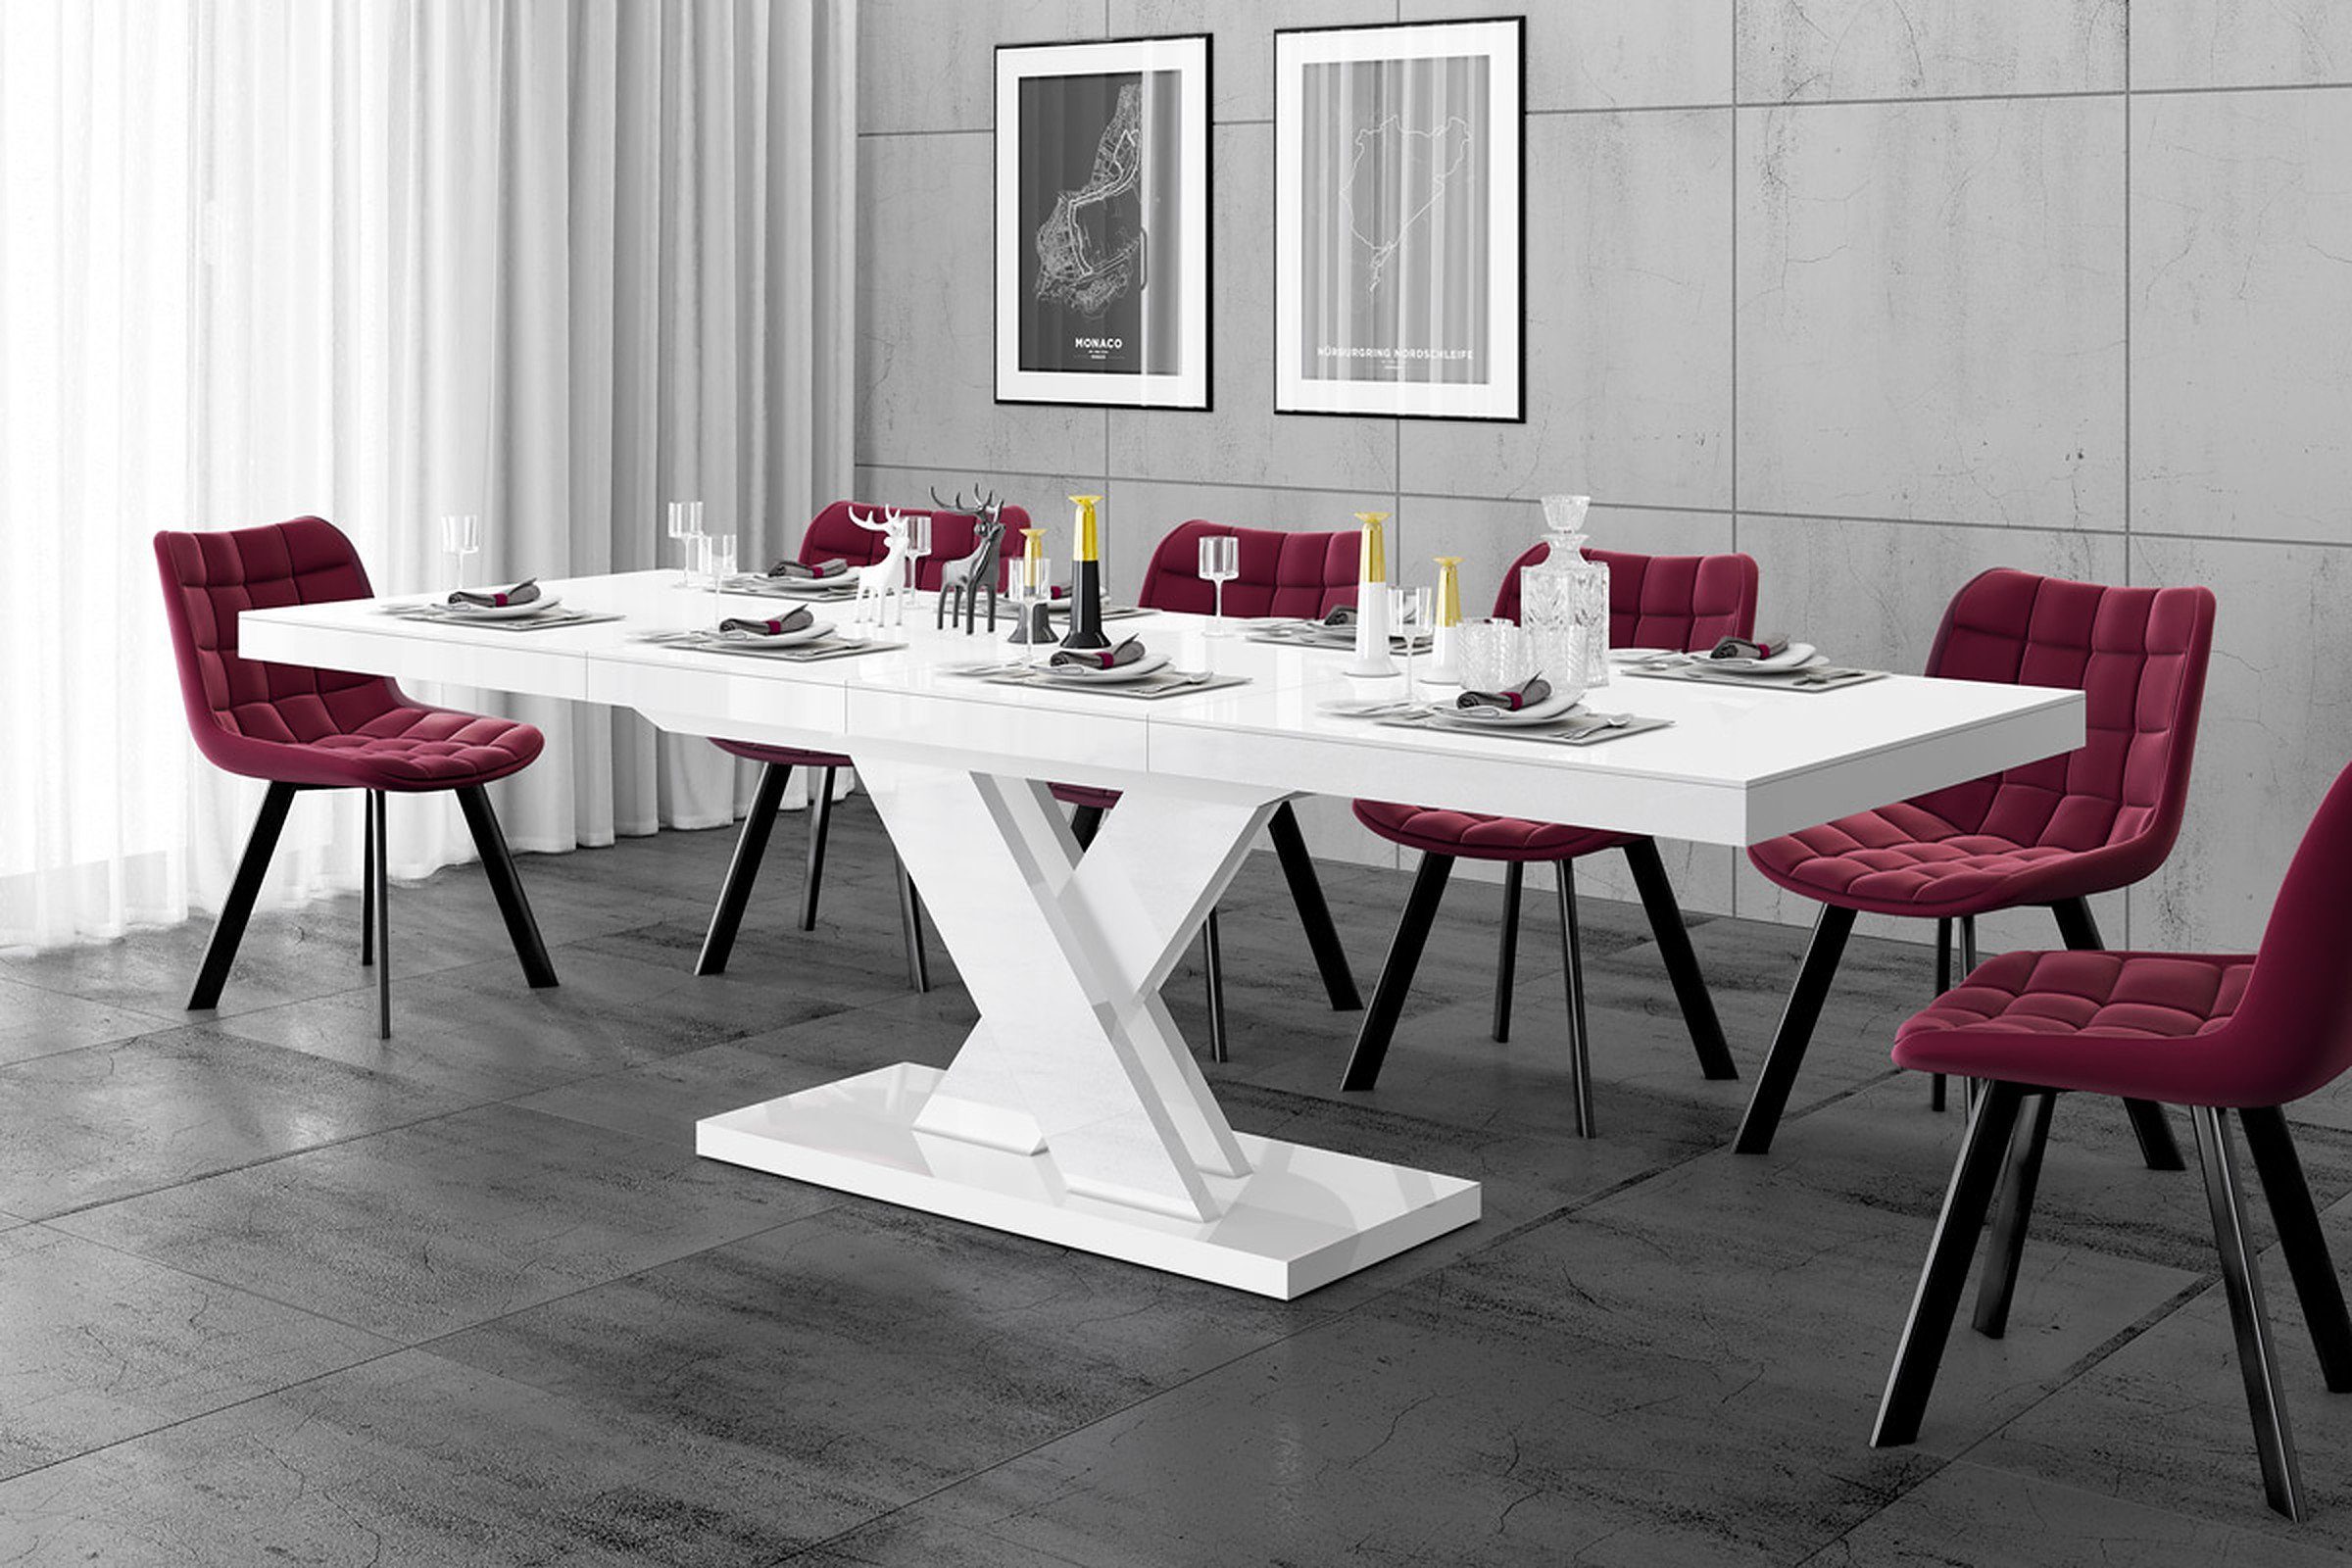 Tisch Esstisch Weiß Design cm 160 Esstisch bis designimpex 256 HEN-111 ausziehbar Hochglanz